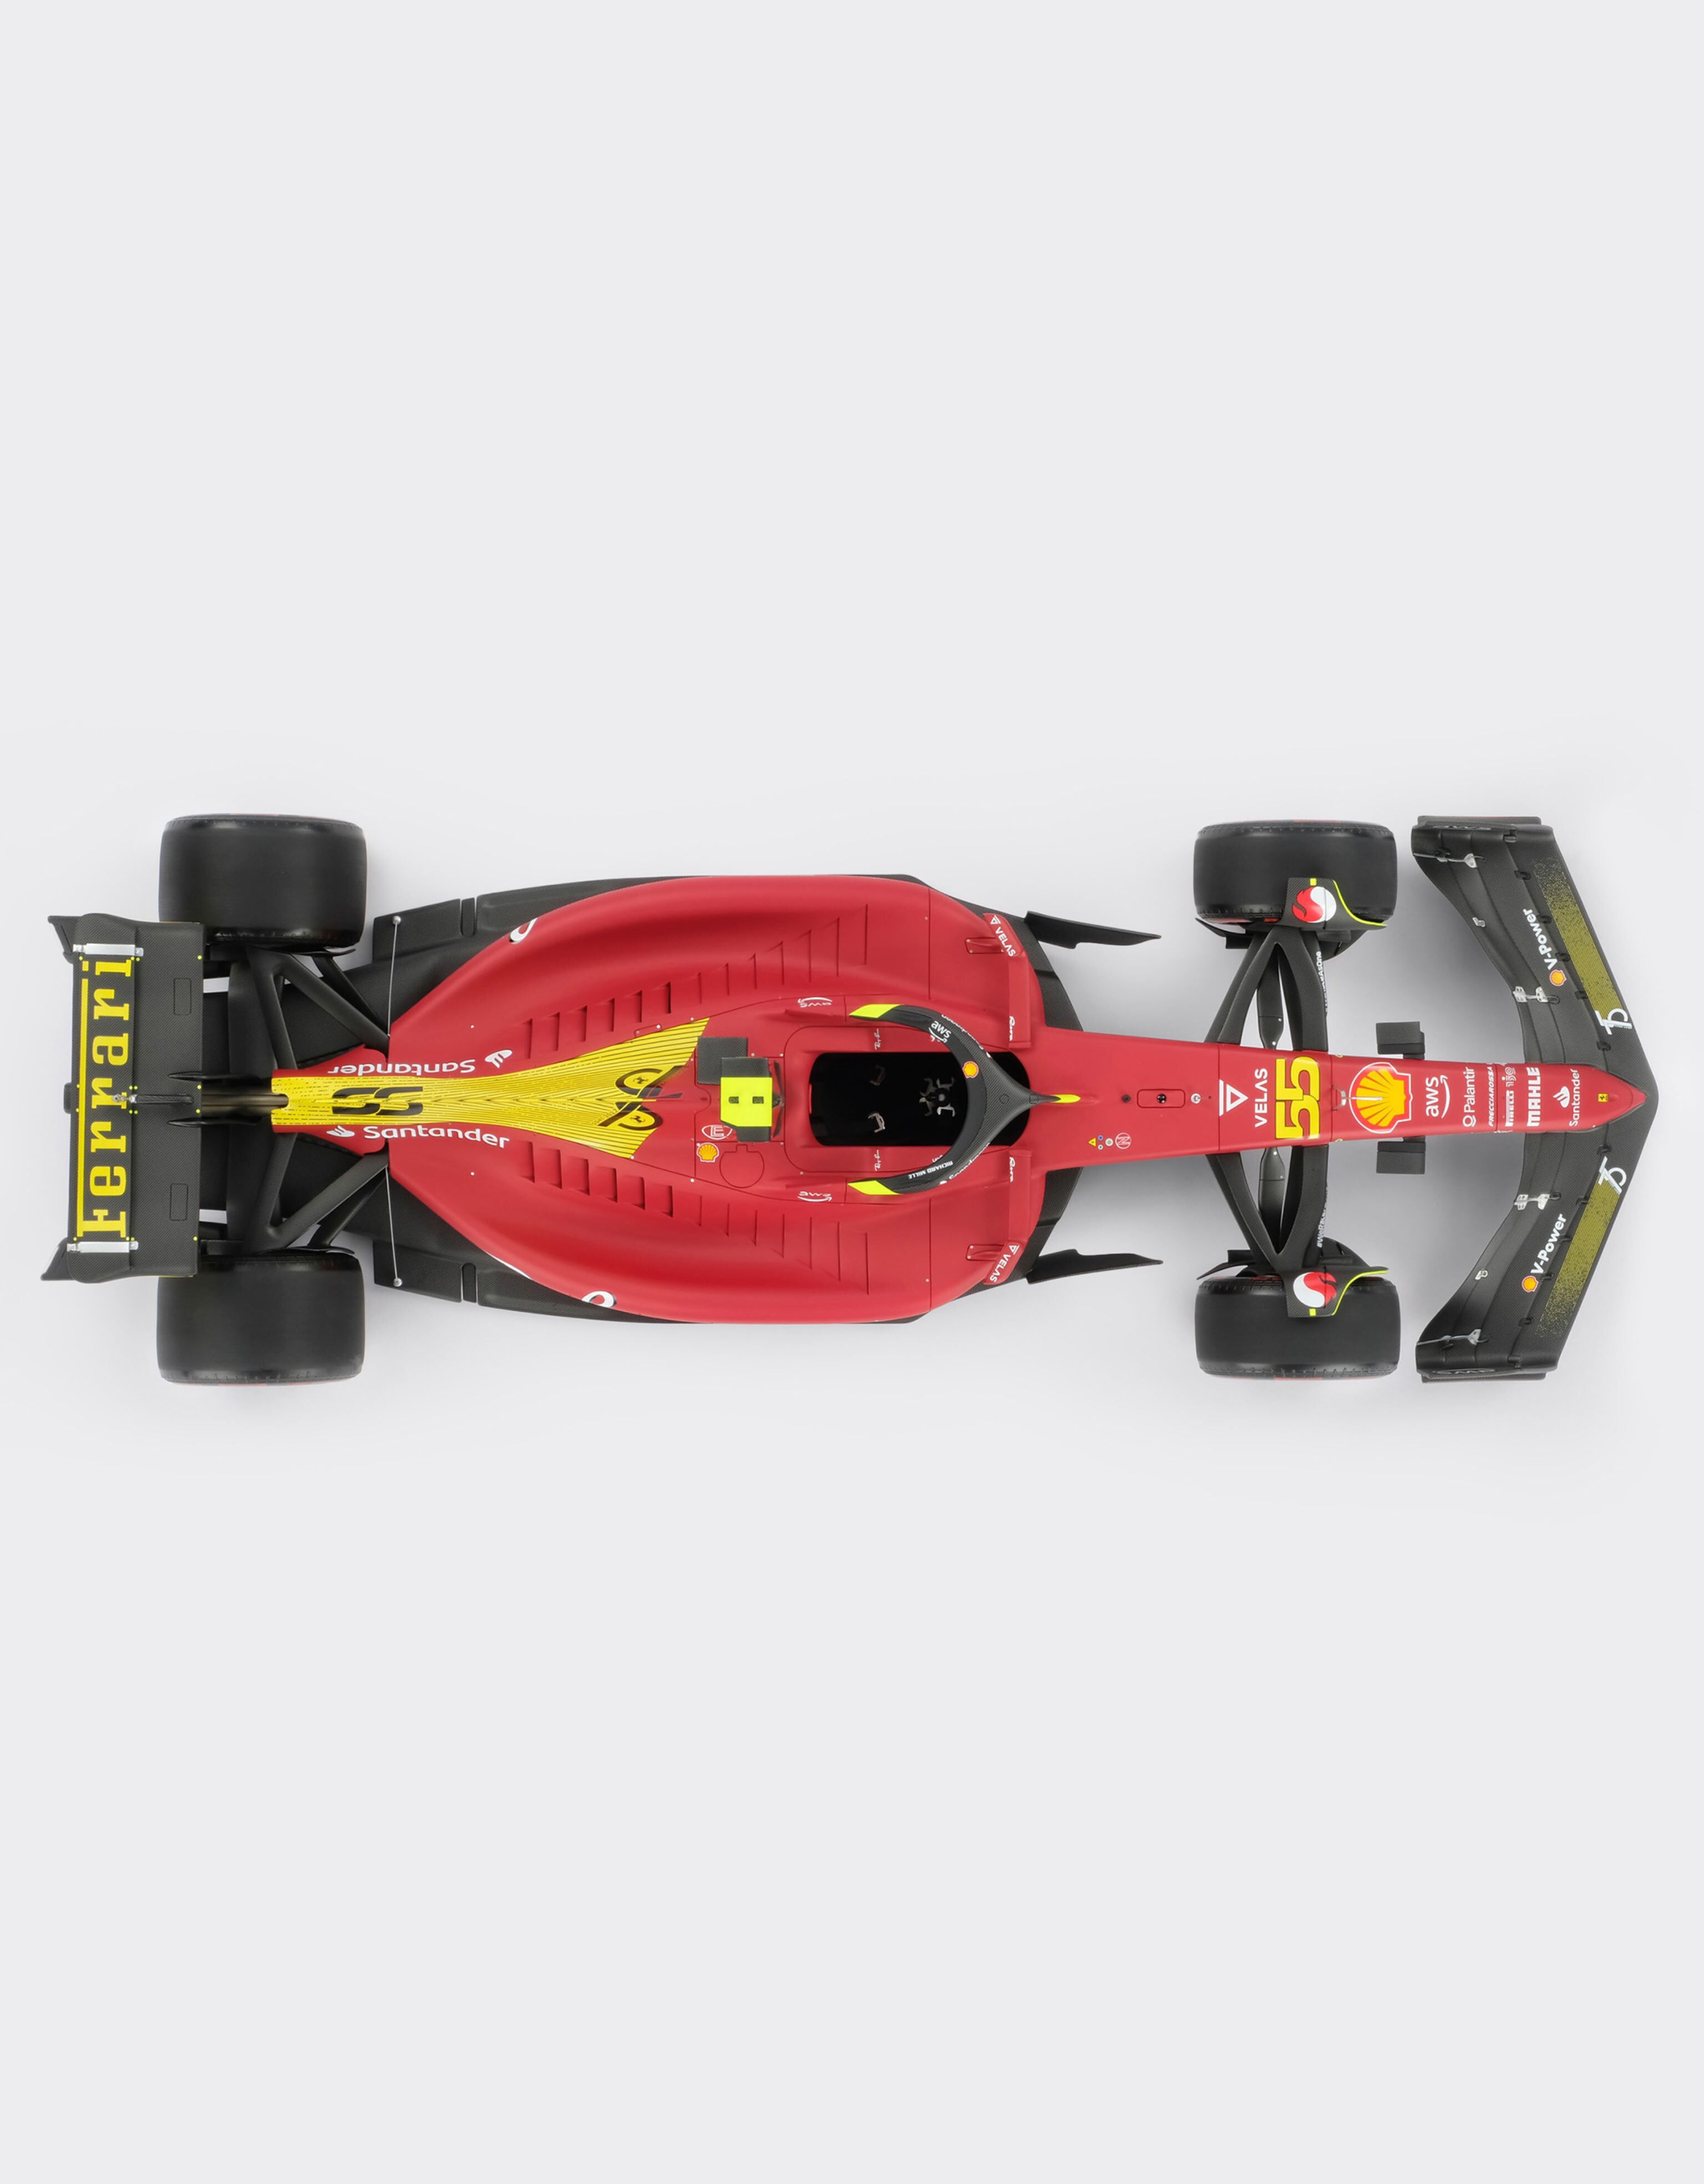 Ferrari Ferrari F1-75 model in 1:8 scale Rosso Corsa F1021f